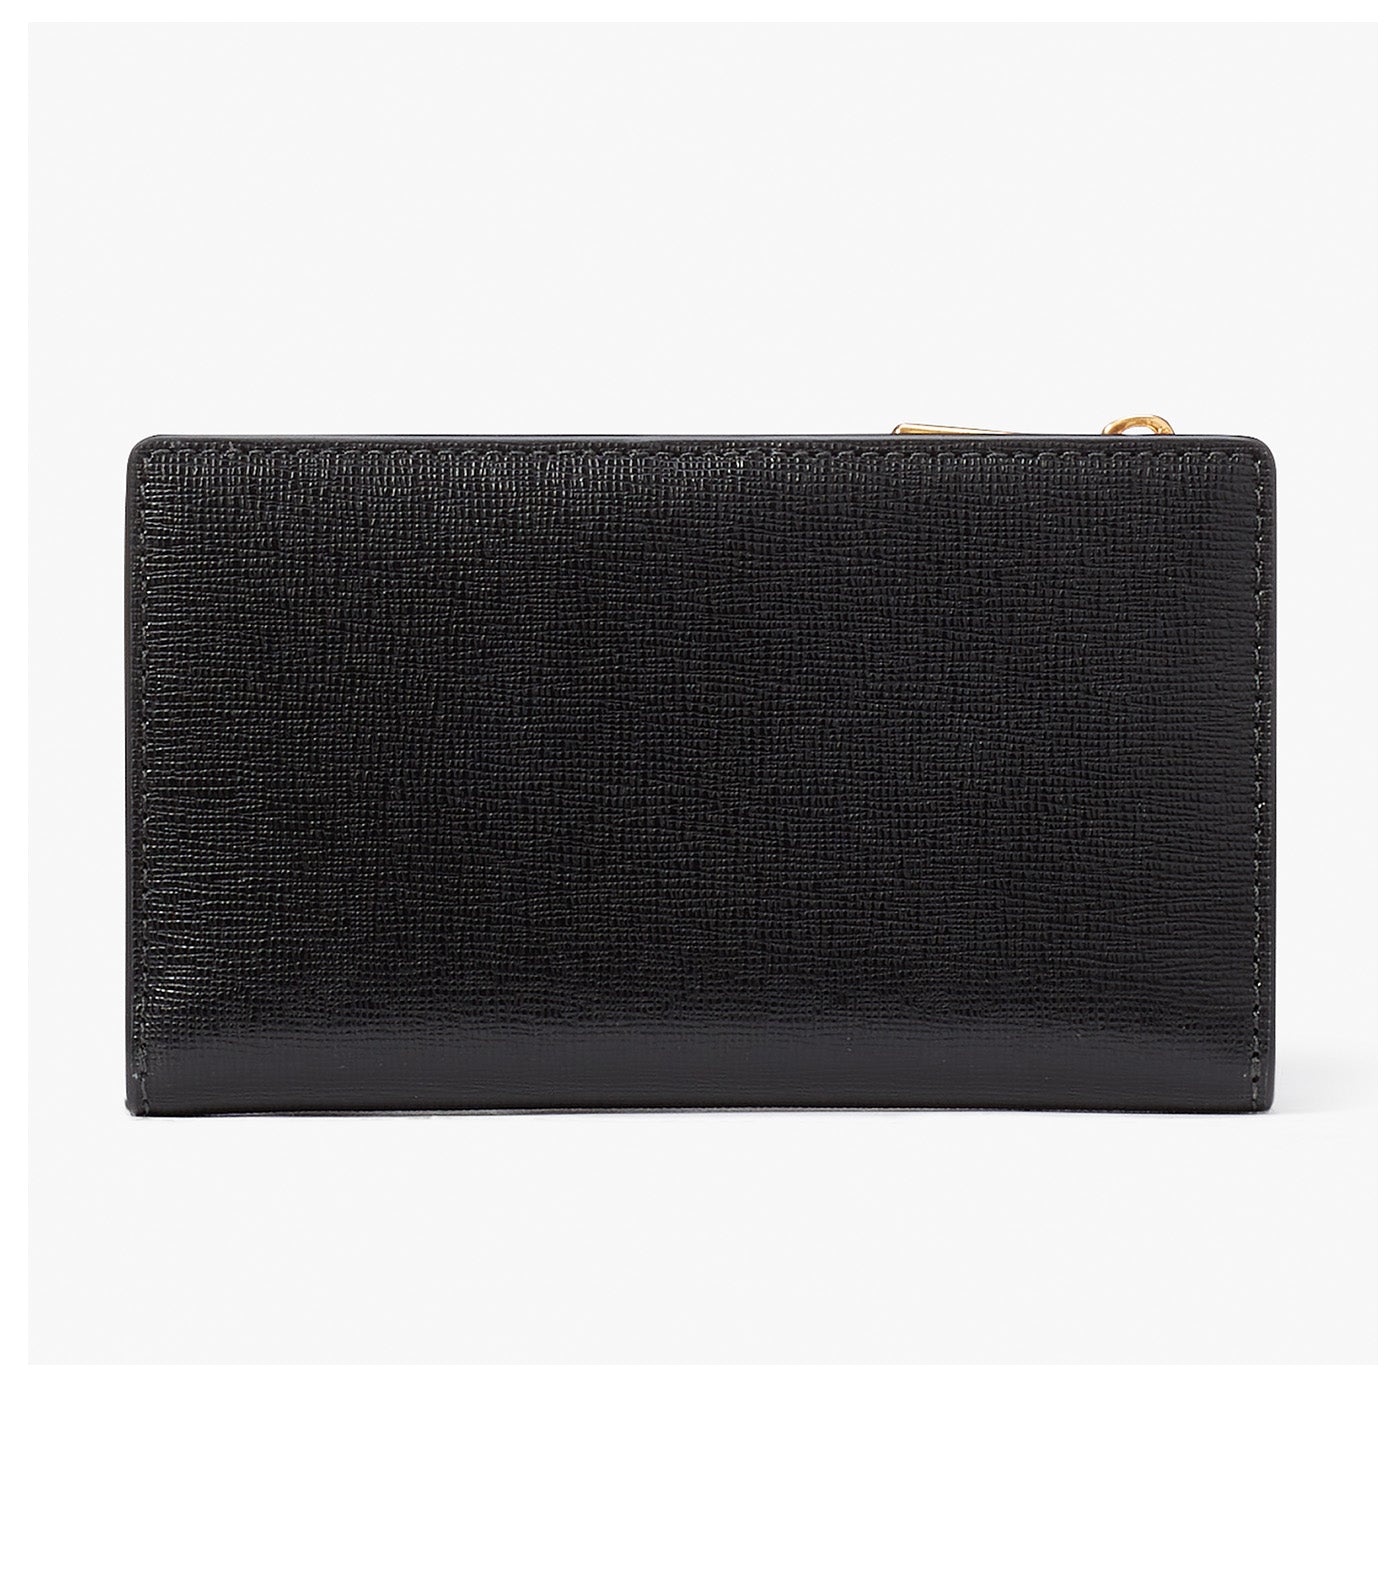 Ellie Embellished Small Slim Bifold Wallet Black Multi